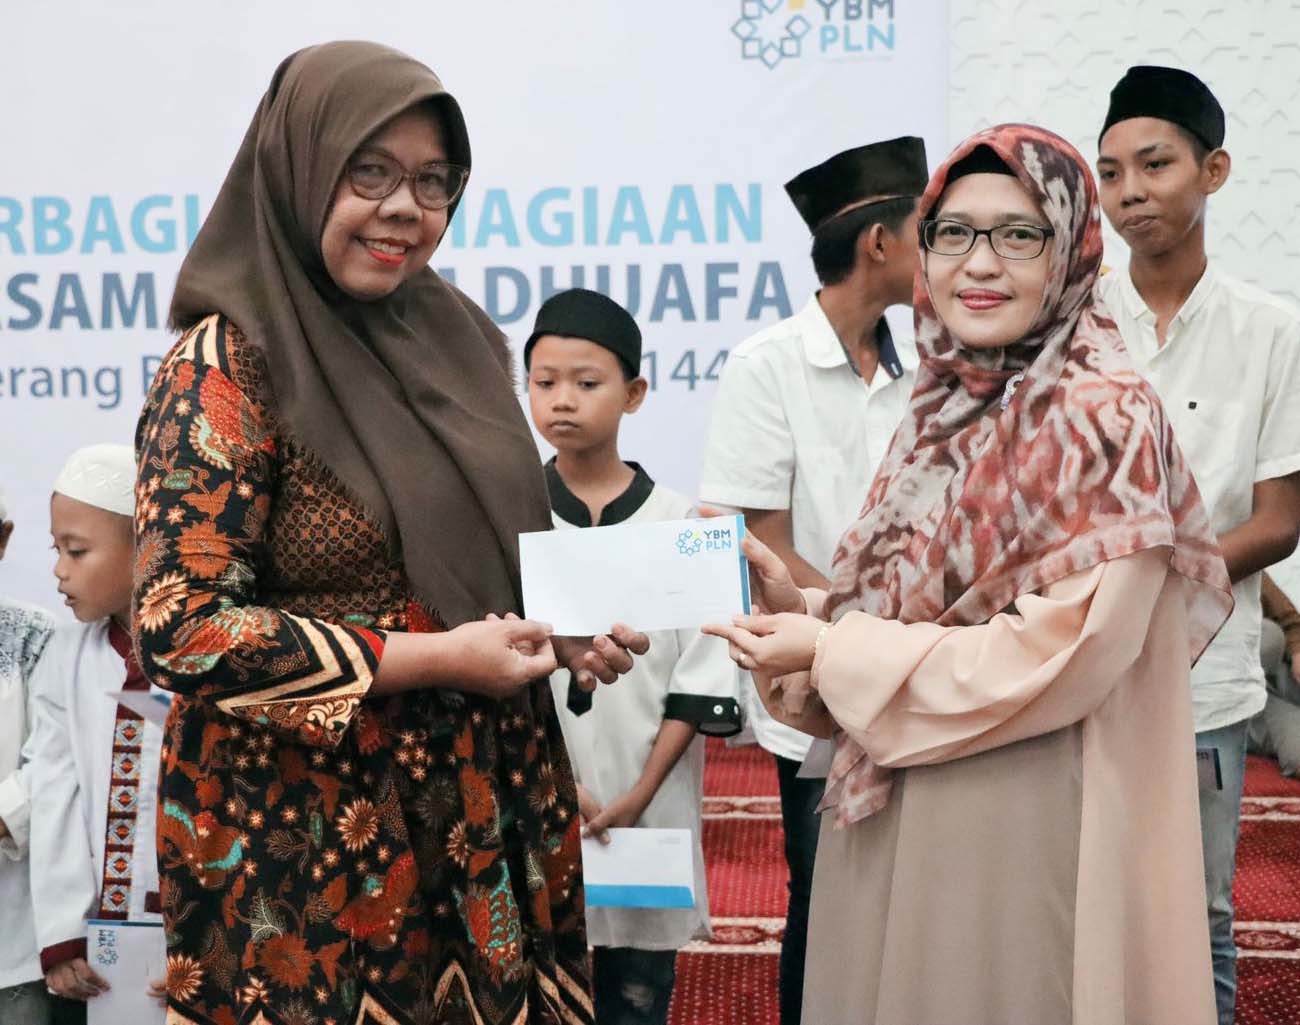 Yayasan Baitul Maal PLN UID S2JB Berbagi Kebahagiaan Bersama Yatim Dhuafa di Bulan Ramadhan